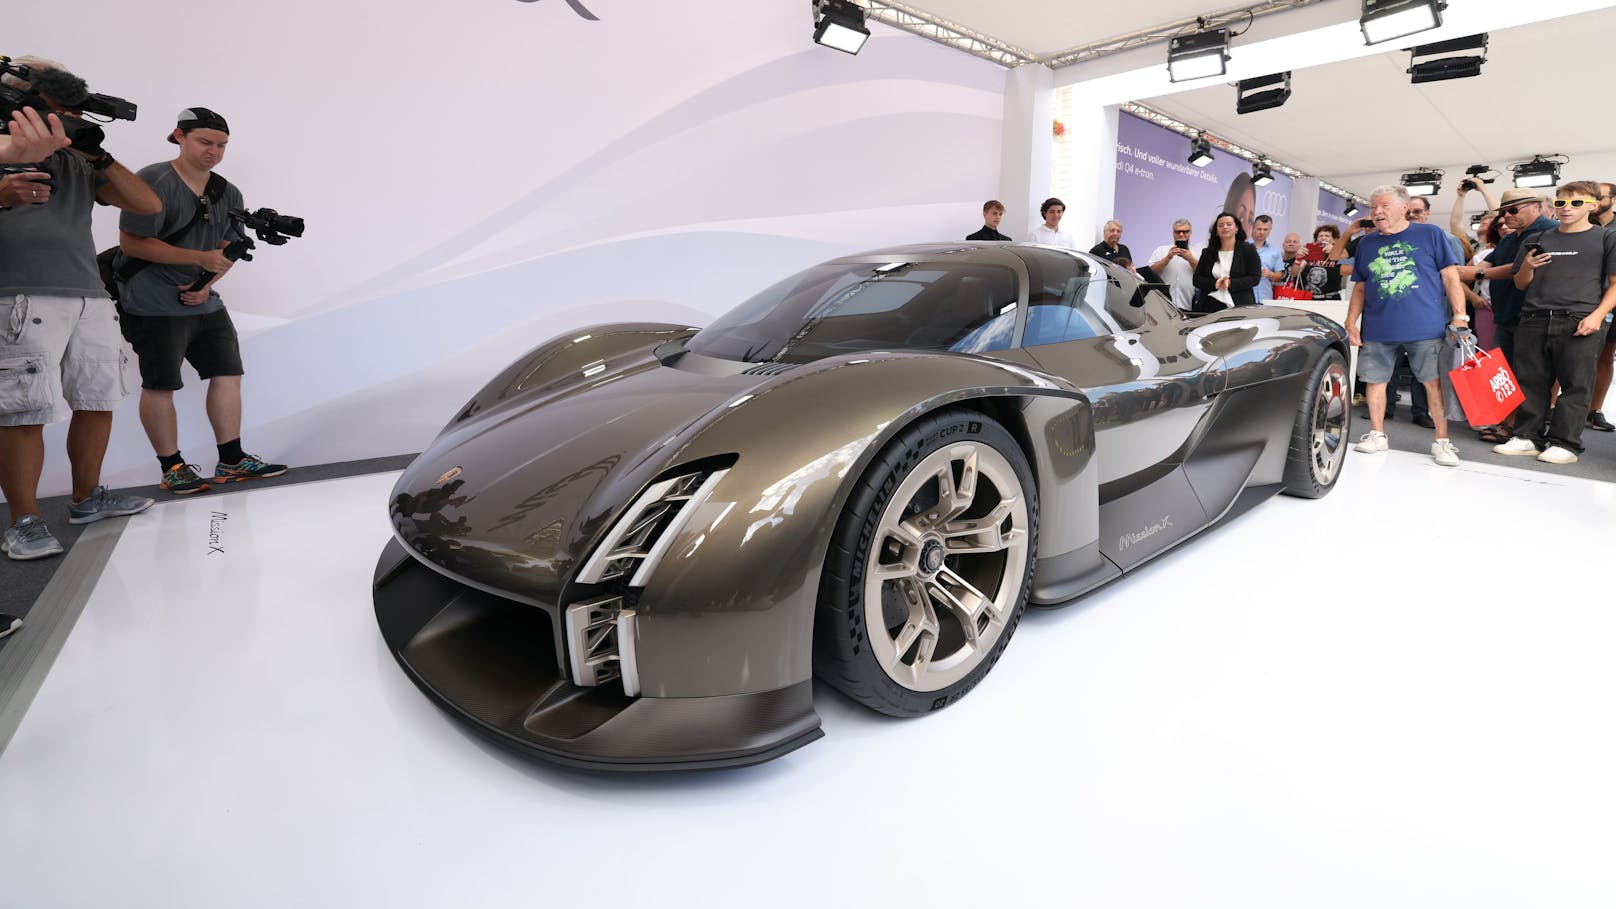 Am Rathausplatz enthüllt: Der Porsche Mission X Concept